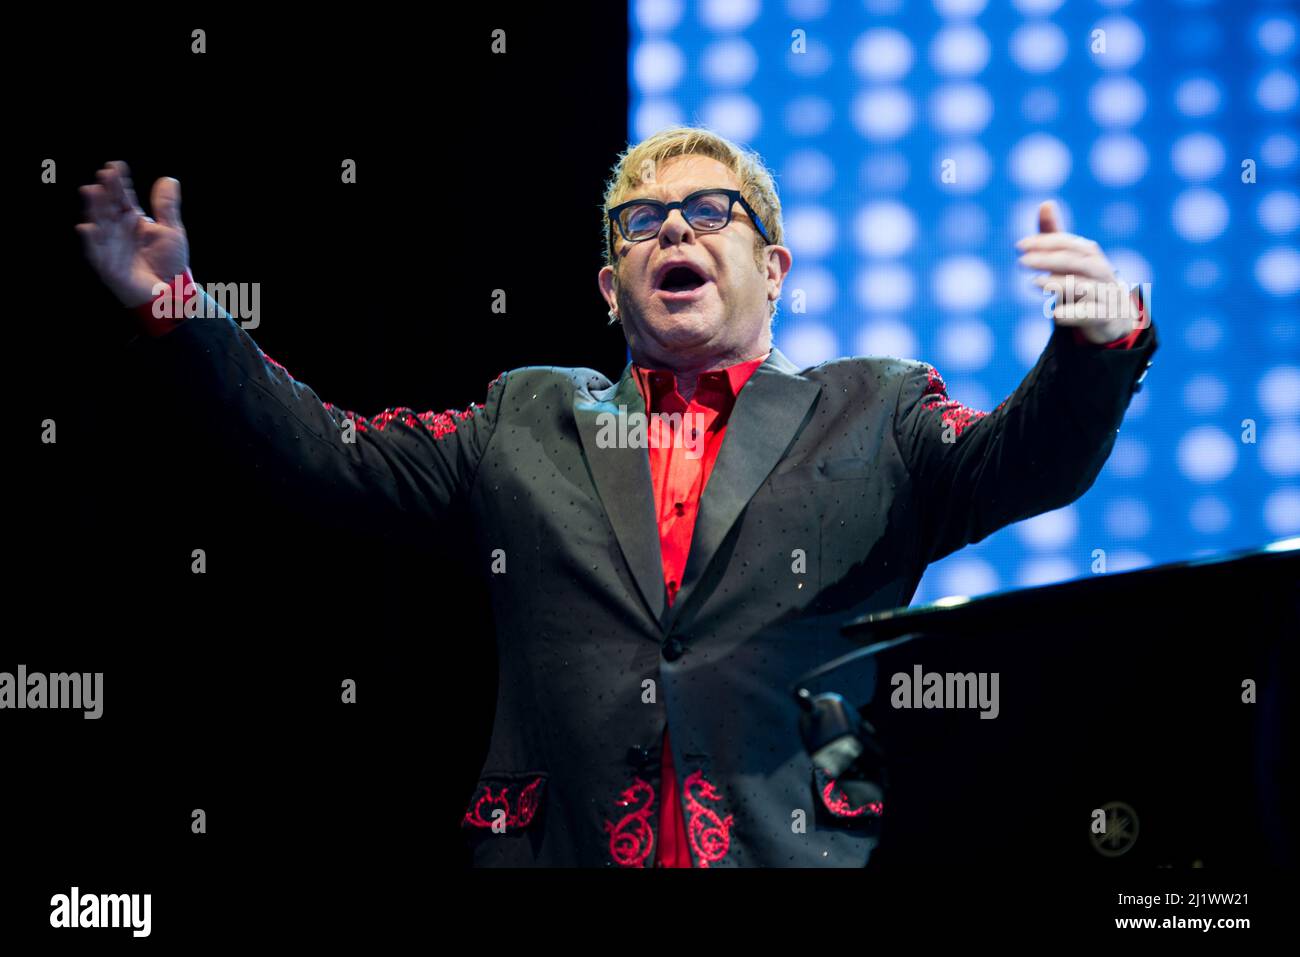 ITALY, BAROLO, COLLISIONI FESTIVAL 2016: Il cantante, pianista e compositore inglese Sir Elton John (nato Reginald Kenneth Dwight) si esibisce dal vivo al Collisioni Festival 2016 di Barolo per il suo tour "Wonderful Crazy Night" Foto Stock